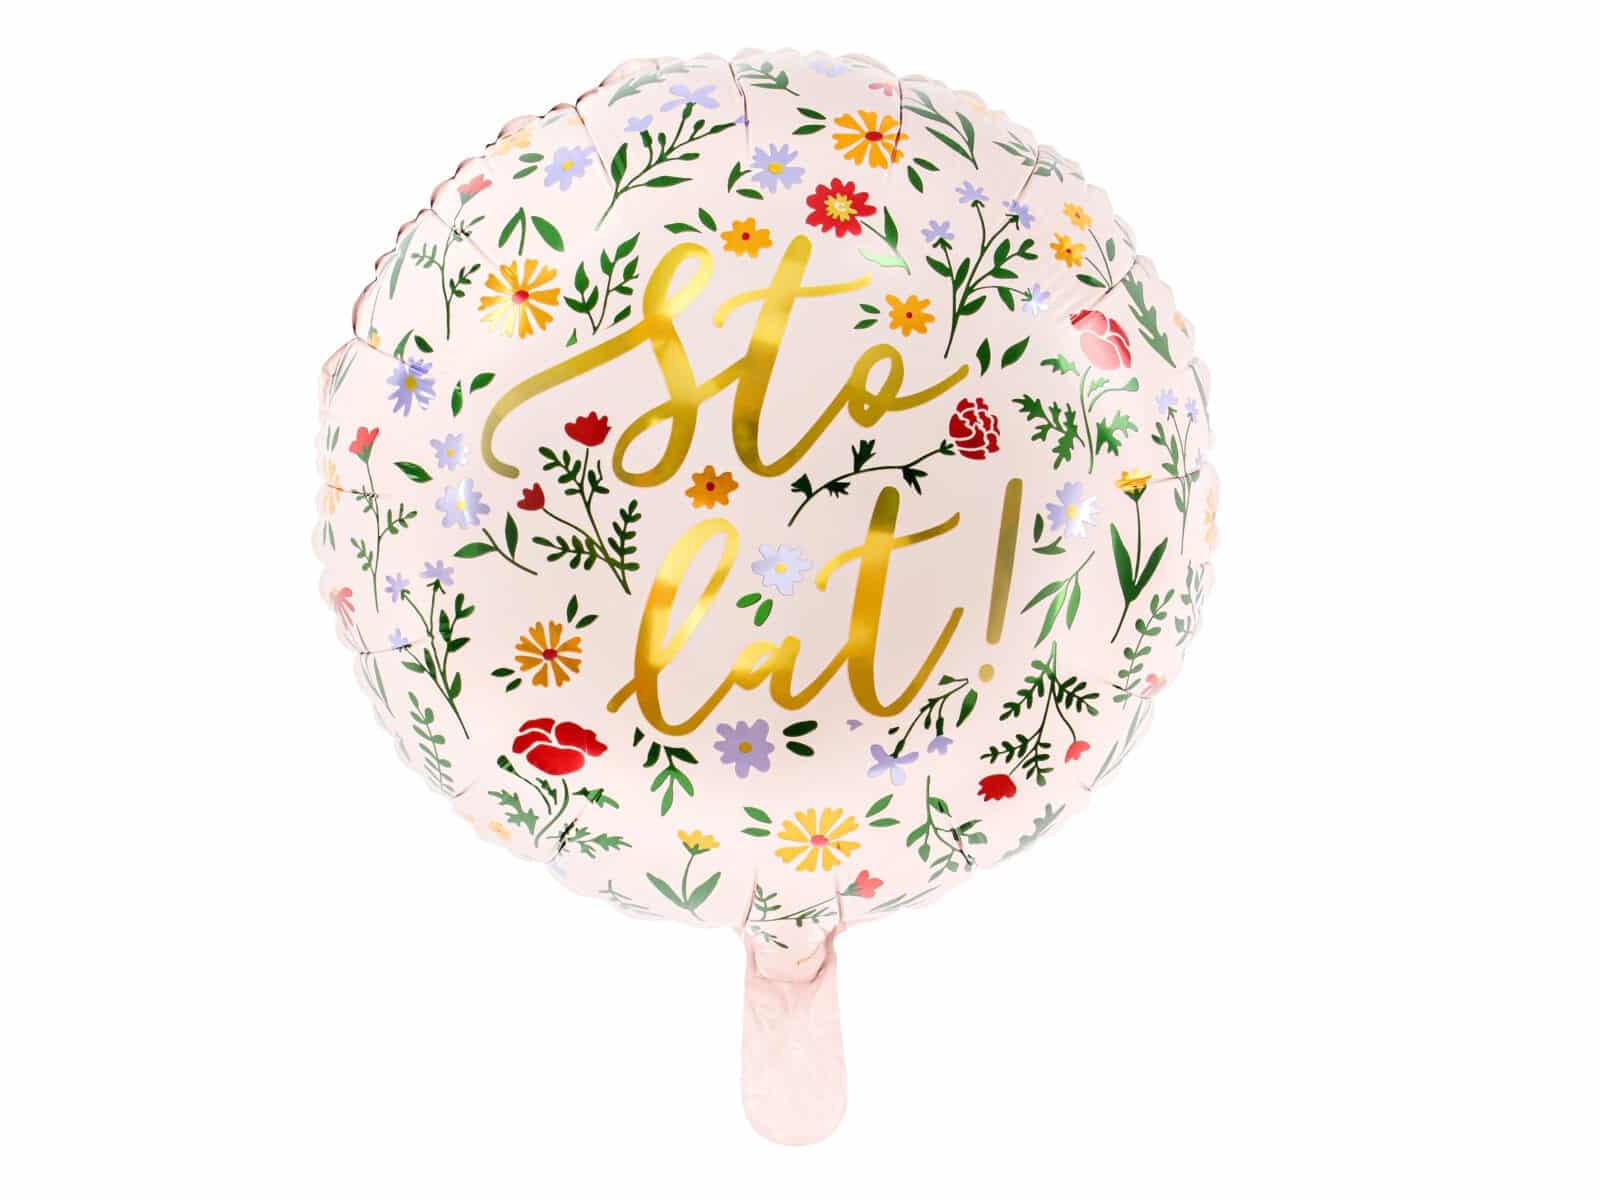 Balon bez helu: Sto lat, kwiaty, 18″ Balon Serce Szalony.pl - Sklep imprezowy